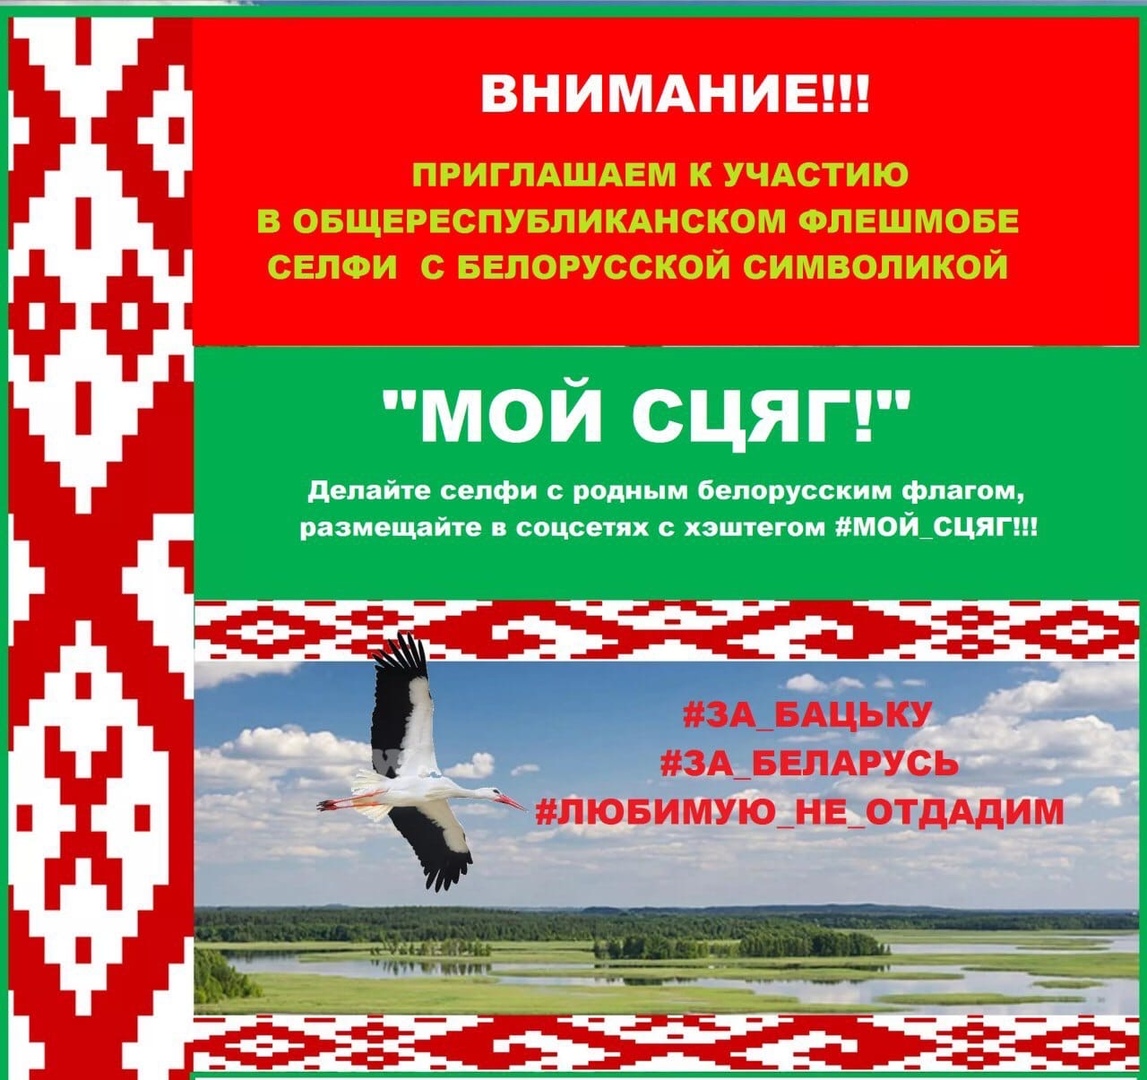 Общереспубликанский флешмоб с белорусской символикой “Мой сцяг”